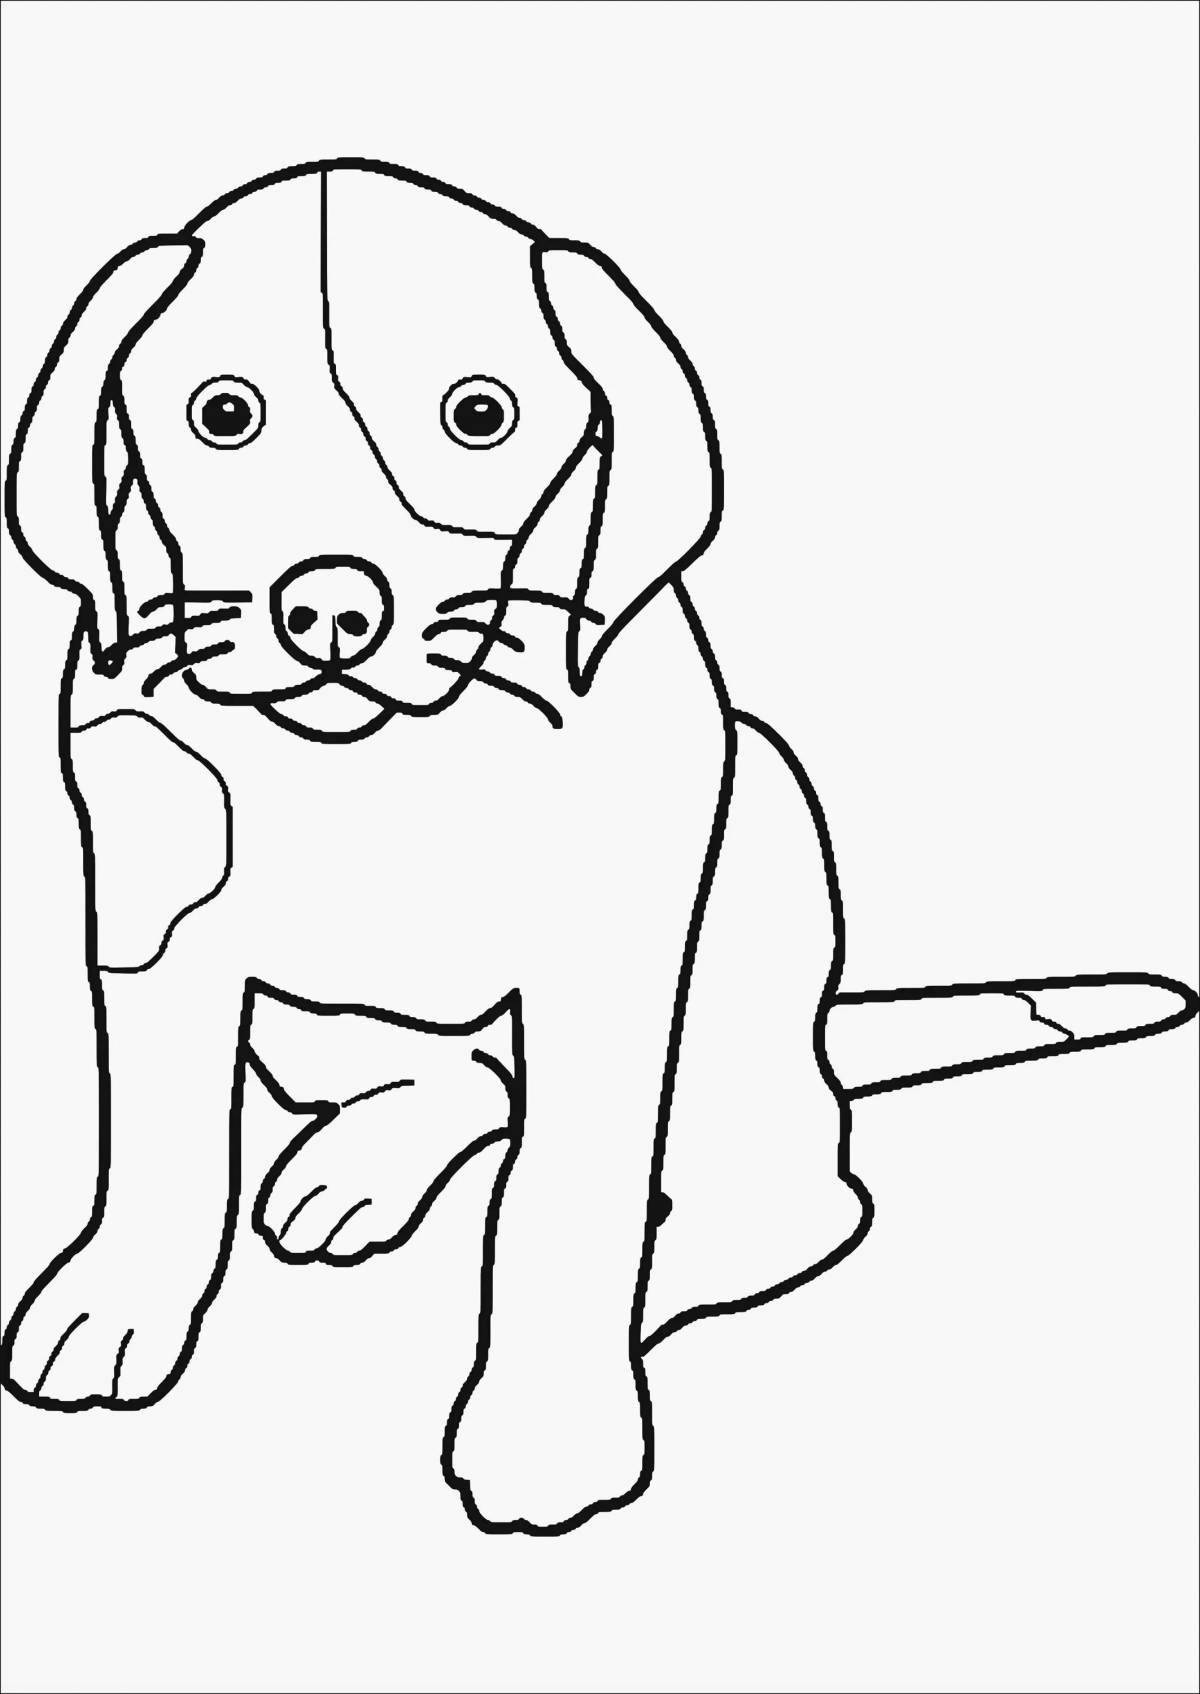 Нечеткая раскраска рисунок щенка